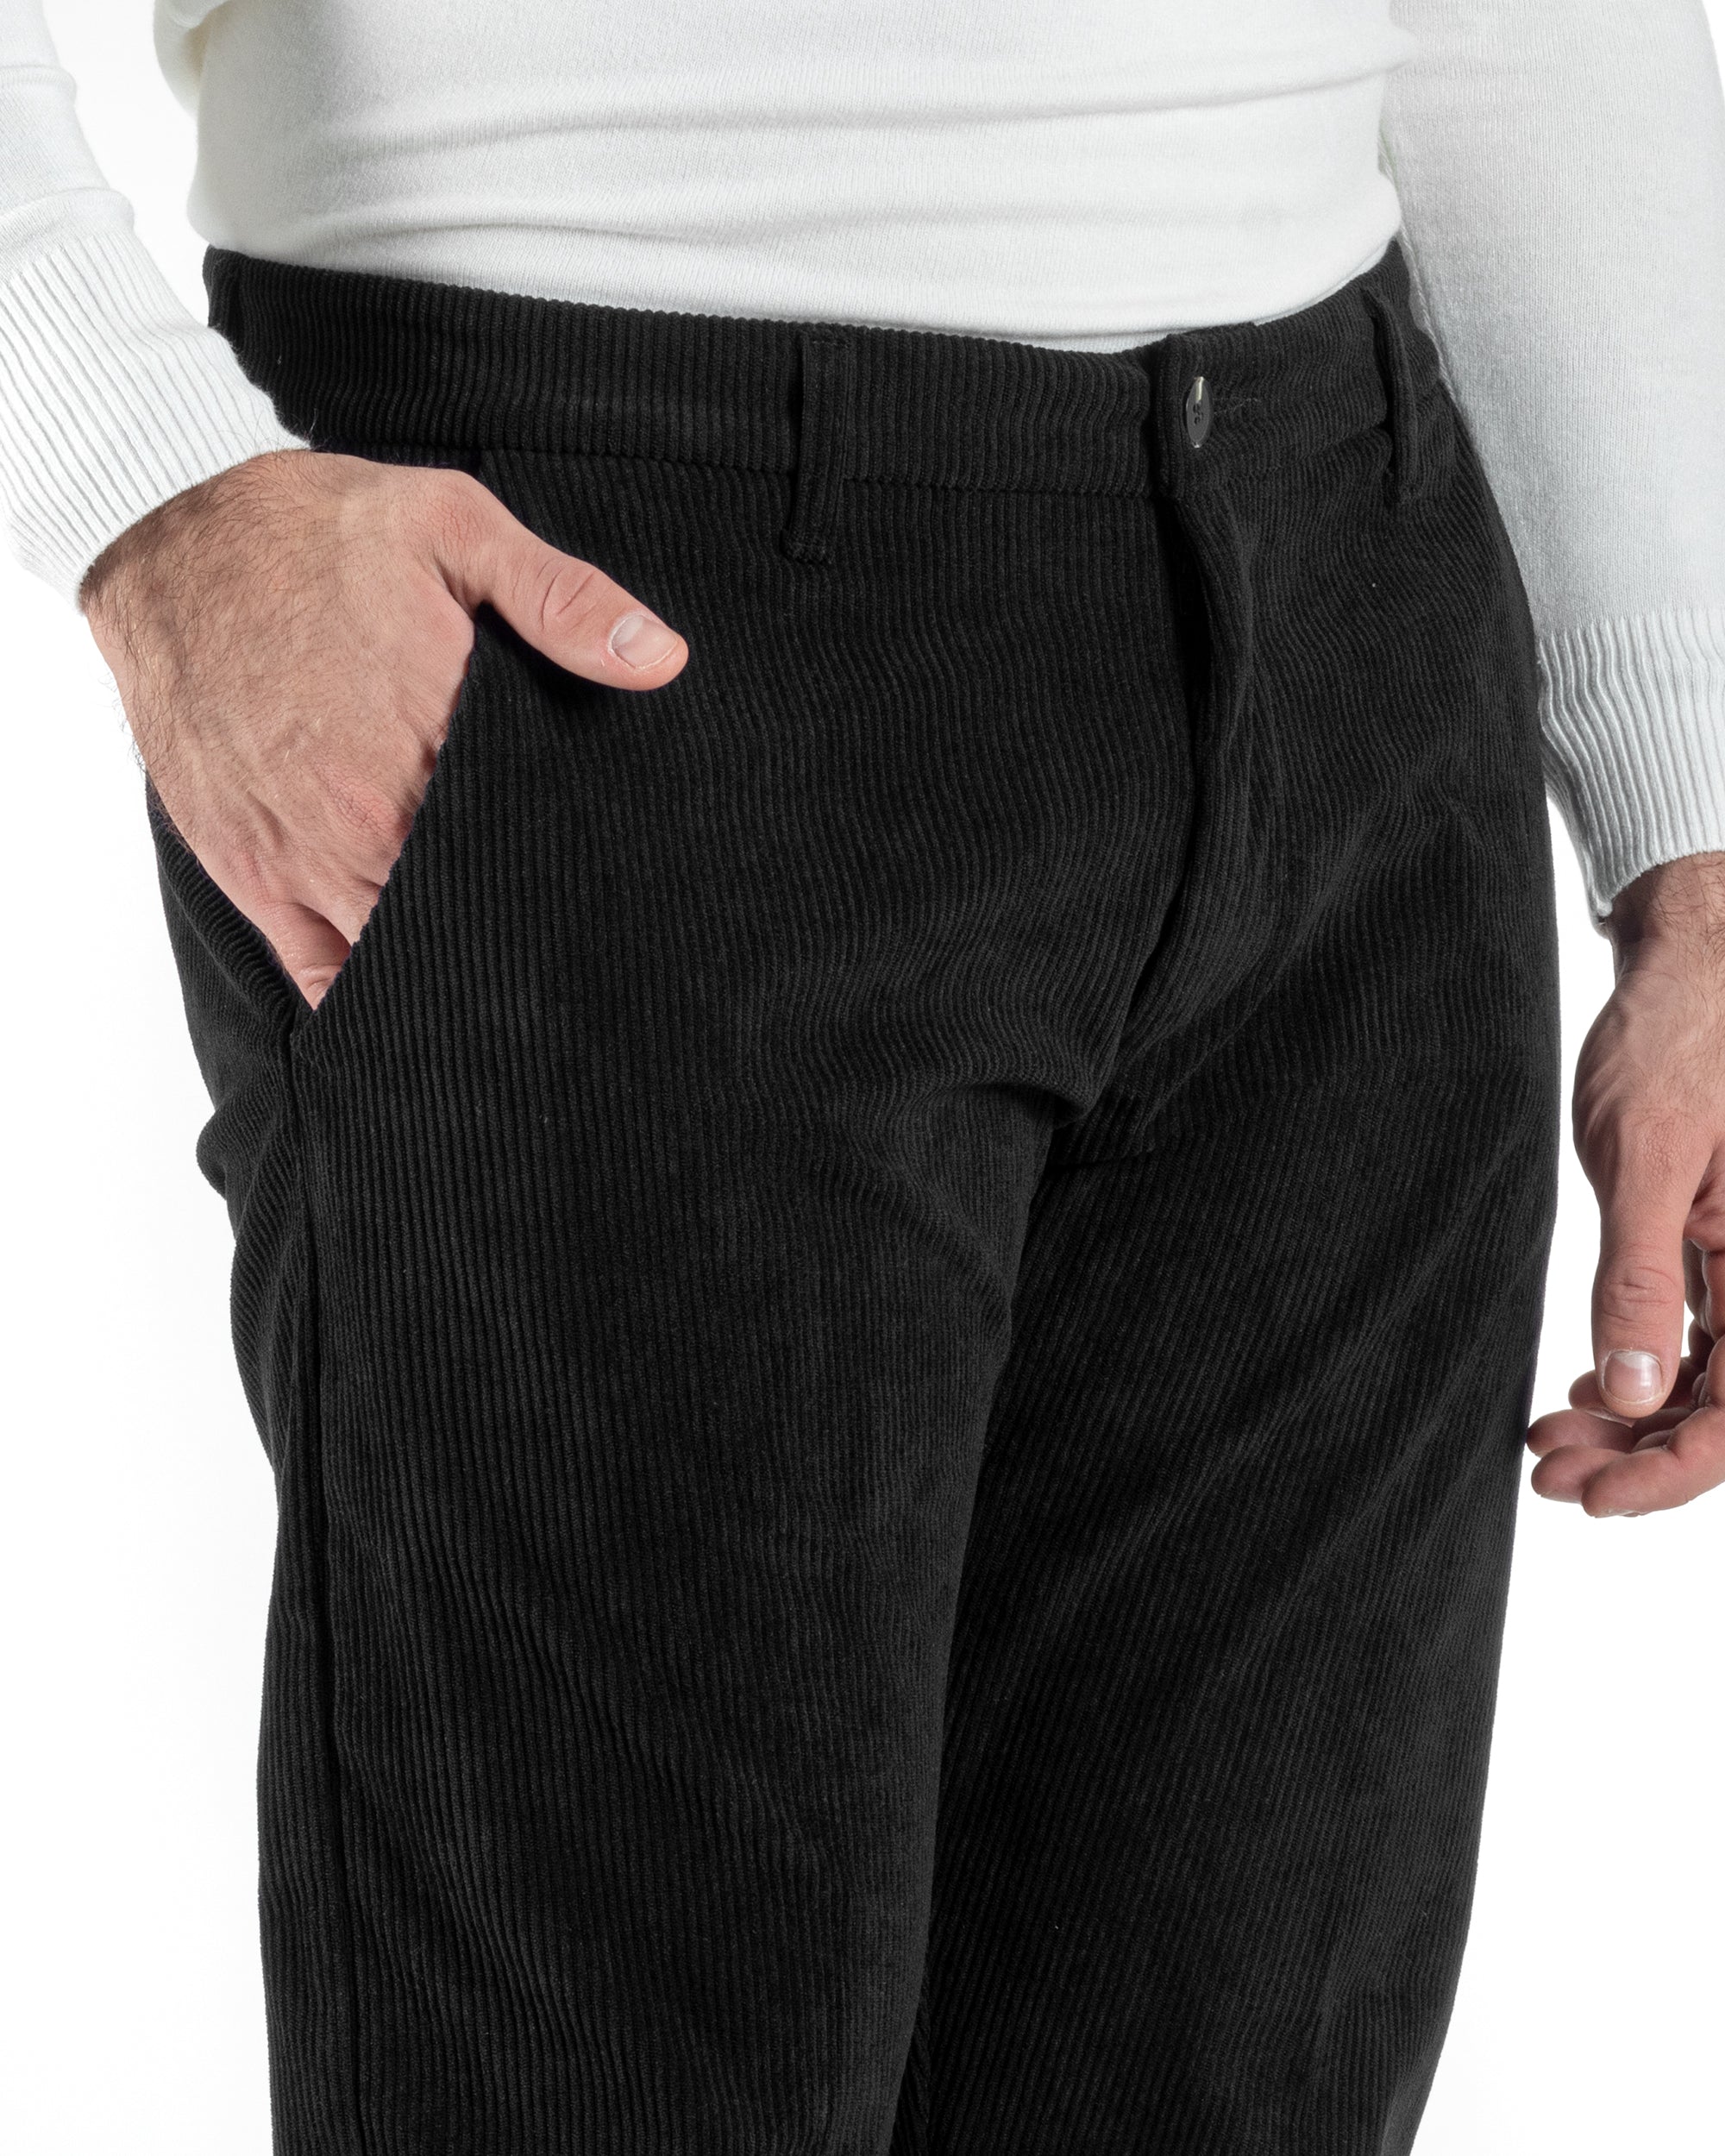 Pantaloni Uomo Tasca America Classico Velluto Costine Nero Casual GIOSAL-P6004A